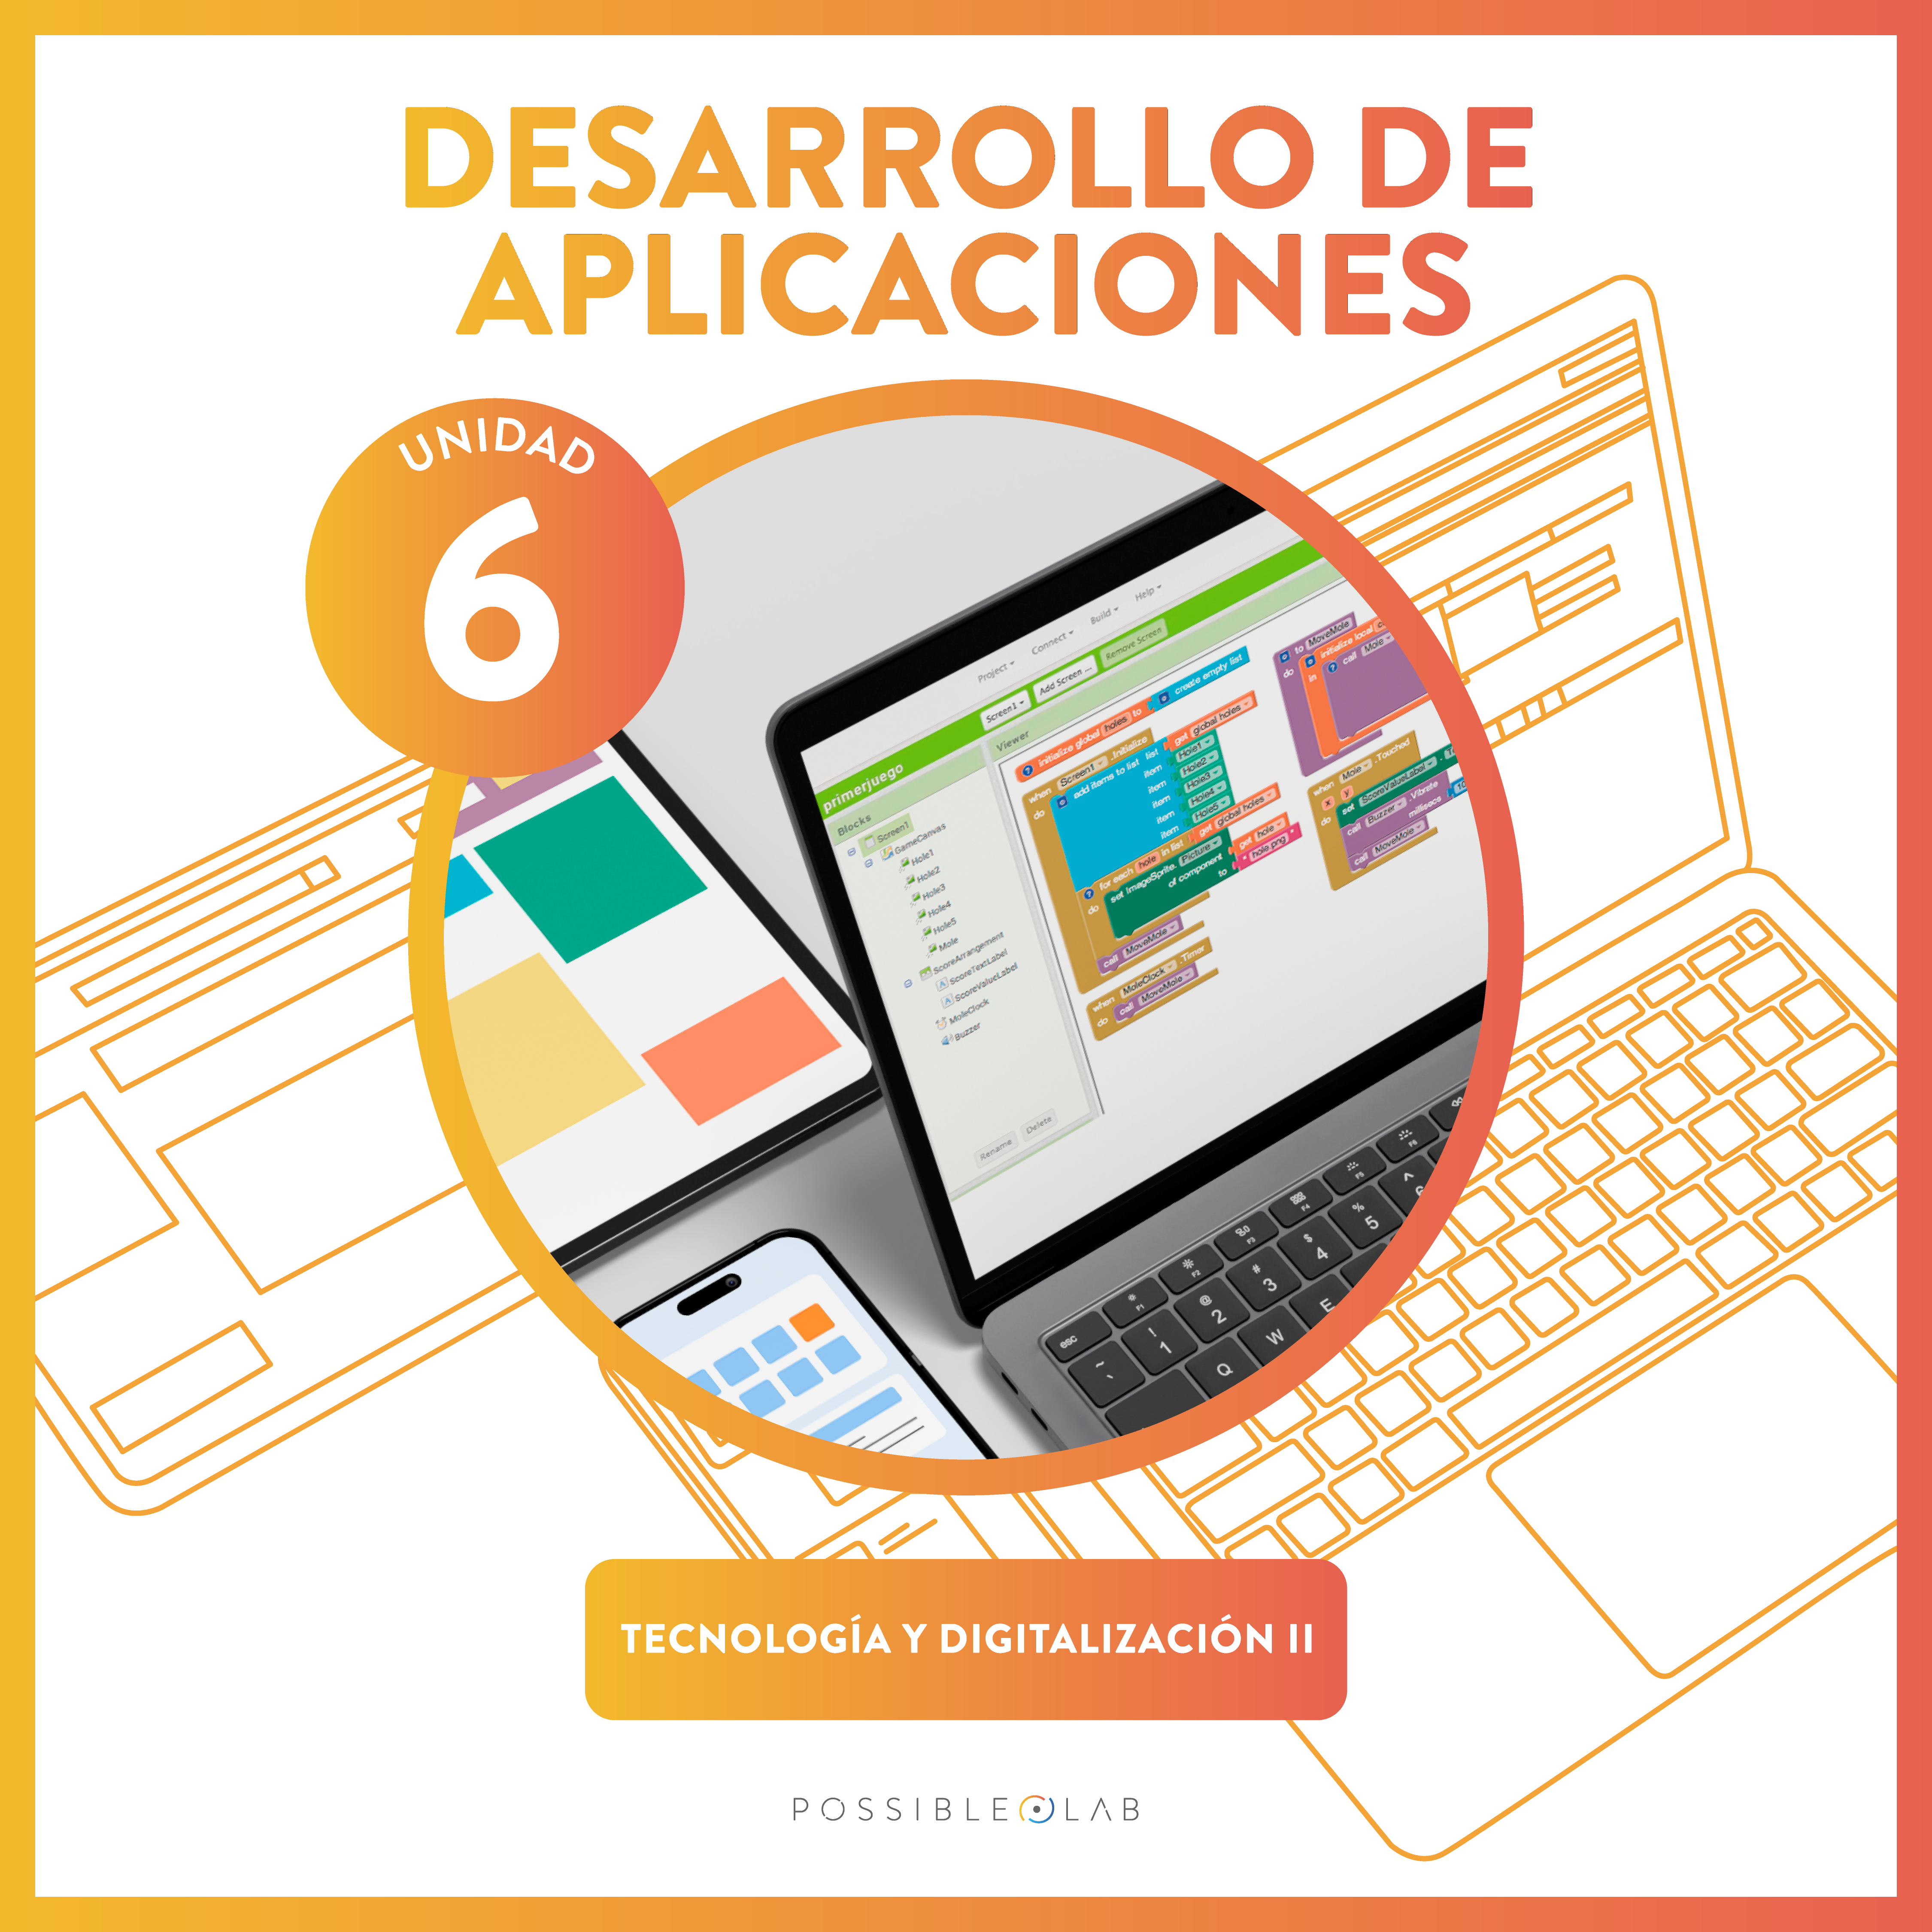 6.Desarrollo de aplicaciones